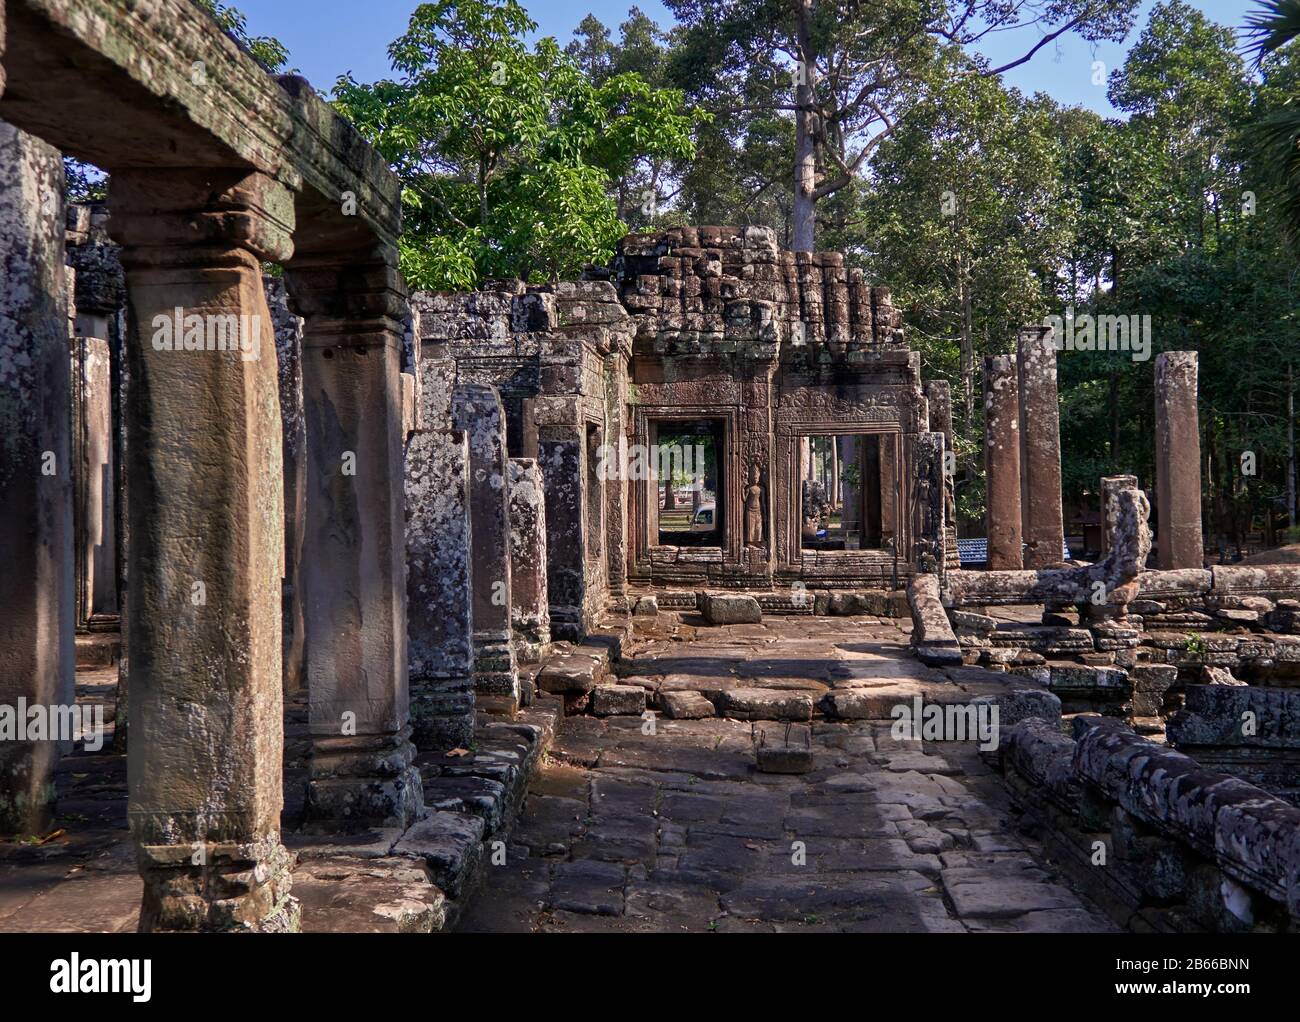 Rosafarbener Sandstein, der prächtige Bayon-Tempel, der sich in der letzten Hauptstadt des Khmer Imperiums - Angkor Thom - befindet. Seine 54 gotischen Türme sind mit 216 riesigen lächelnden Gesichtern dekoriert. Erbaut im späten 12. Oder frühen 13. Jahrhundert als offizieller Staatstempel des Königs Jayavarman VII Stockfoto